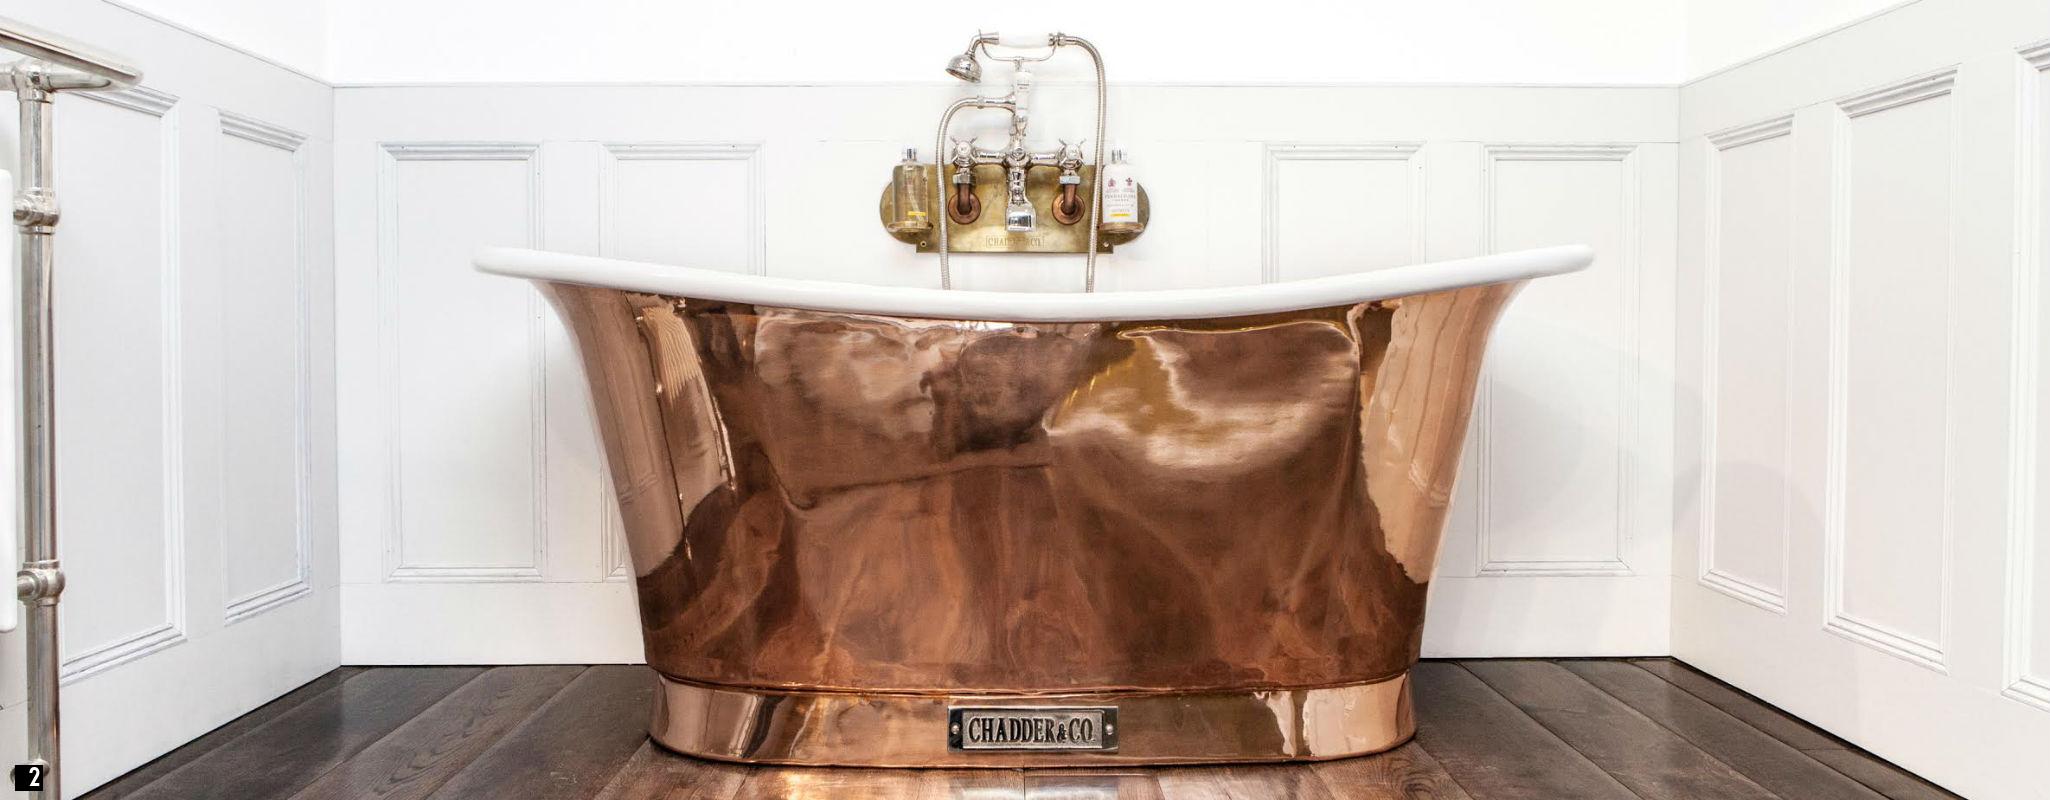 Vintage Copper Bath with Enamel Interior